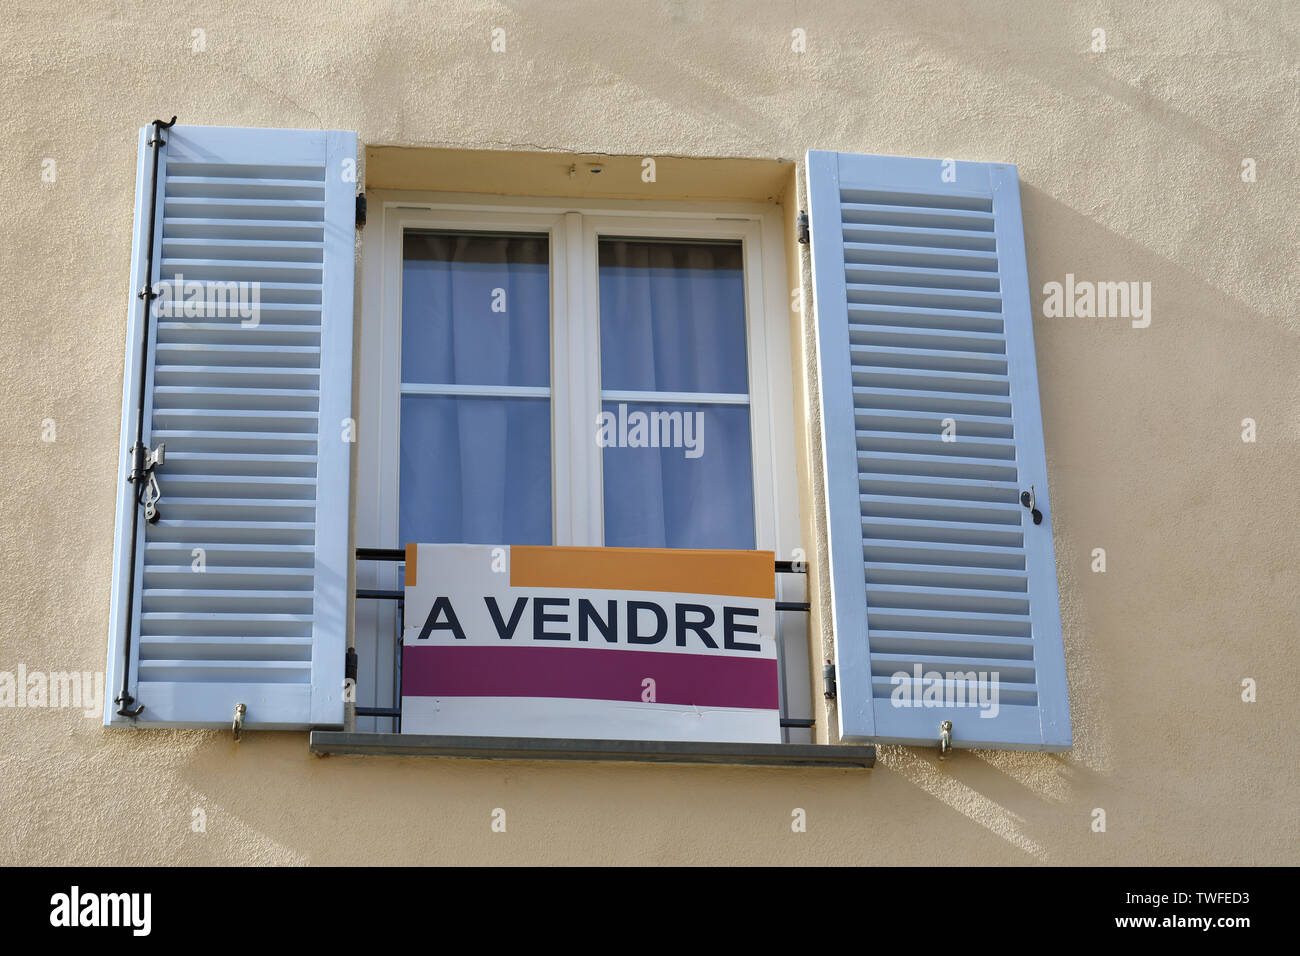 Appartamento in vendita segno (A vendre in lingua francese) davanti a un edificio con appartamenti a Castellar, Francia Riviera Francese, Europa Foto Stock